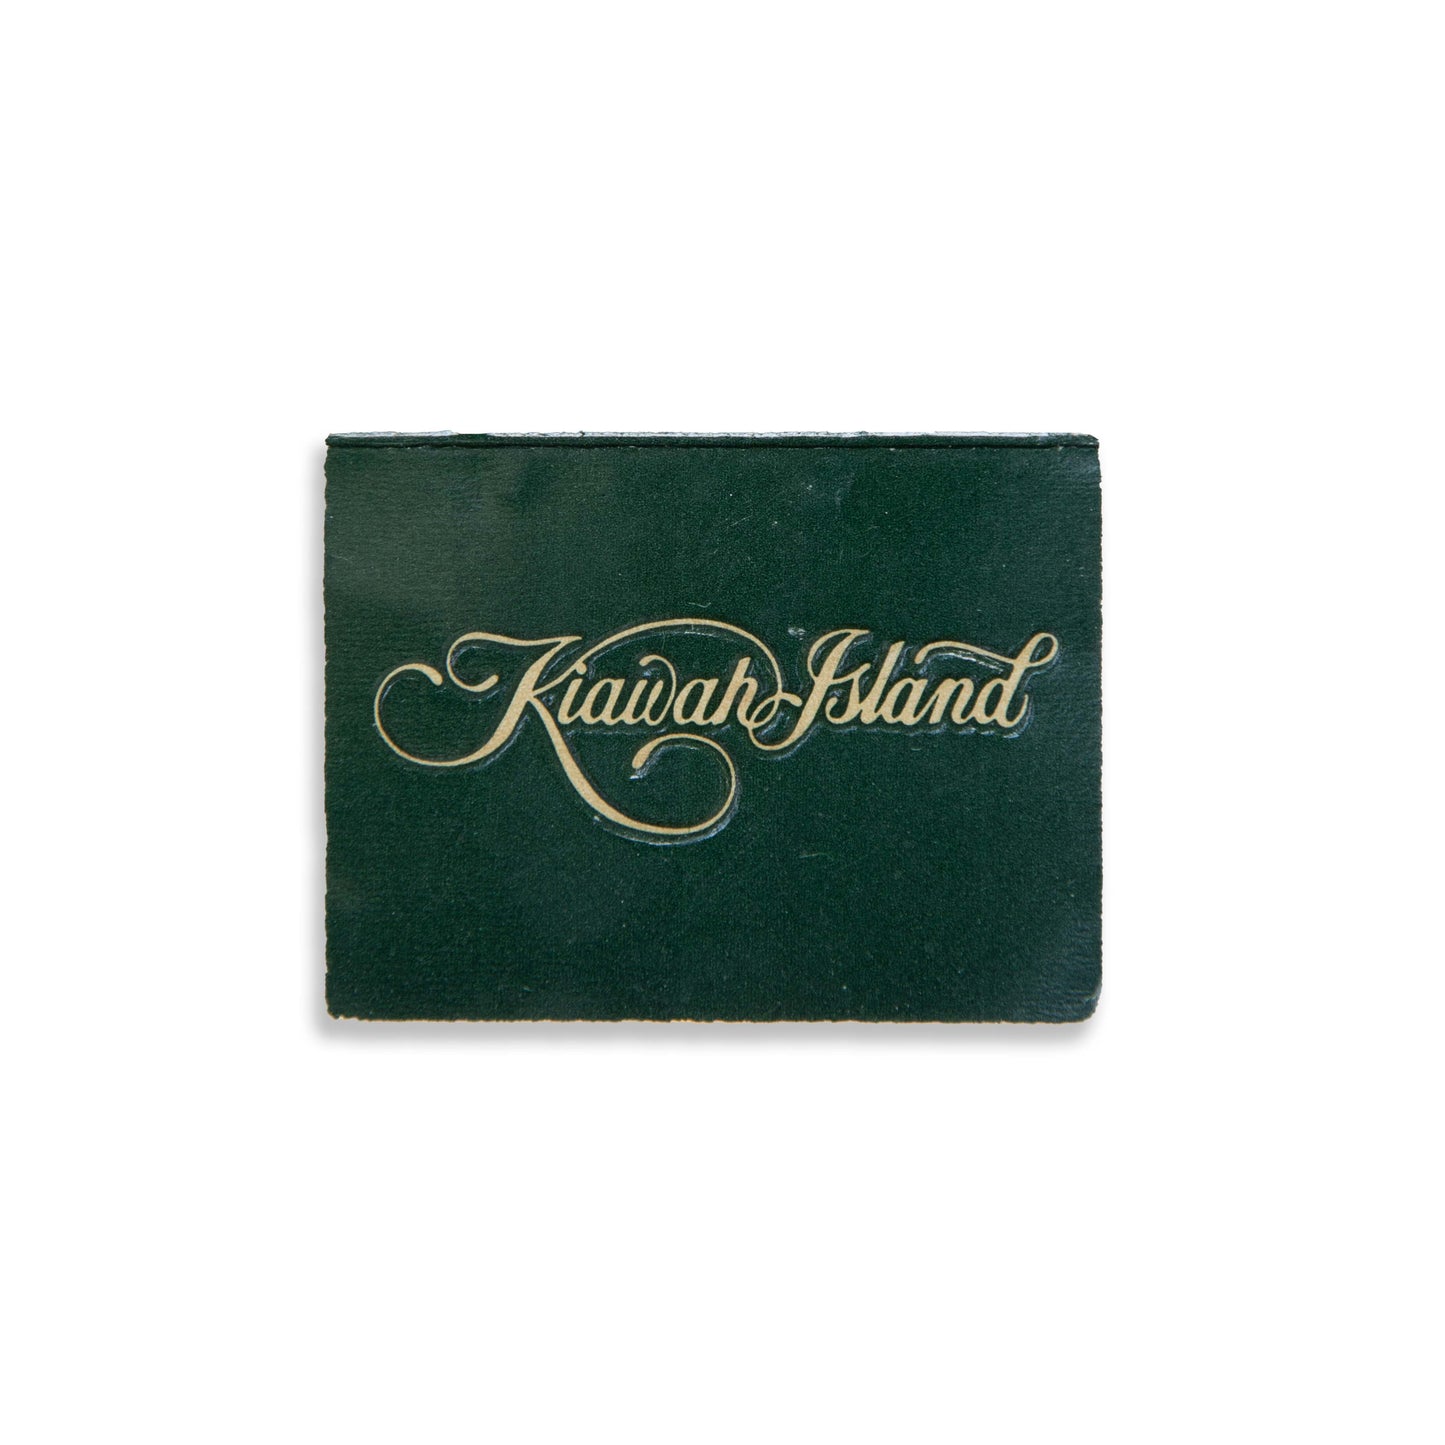 Kiawah Island (Green)